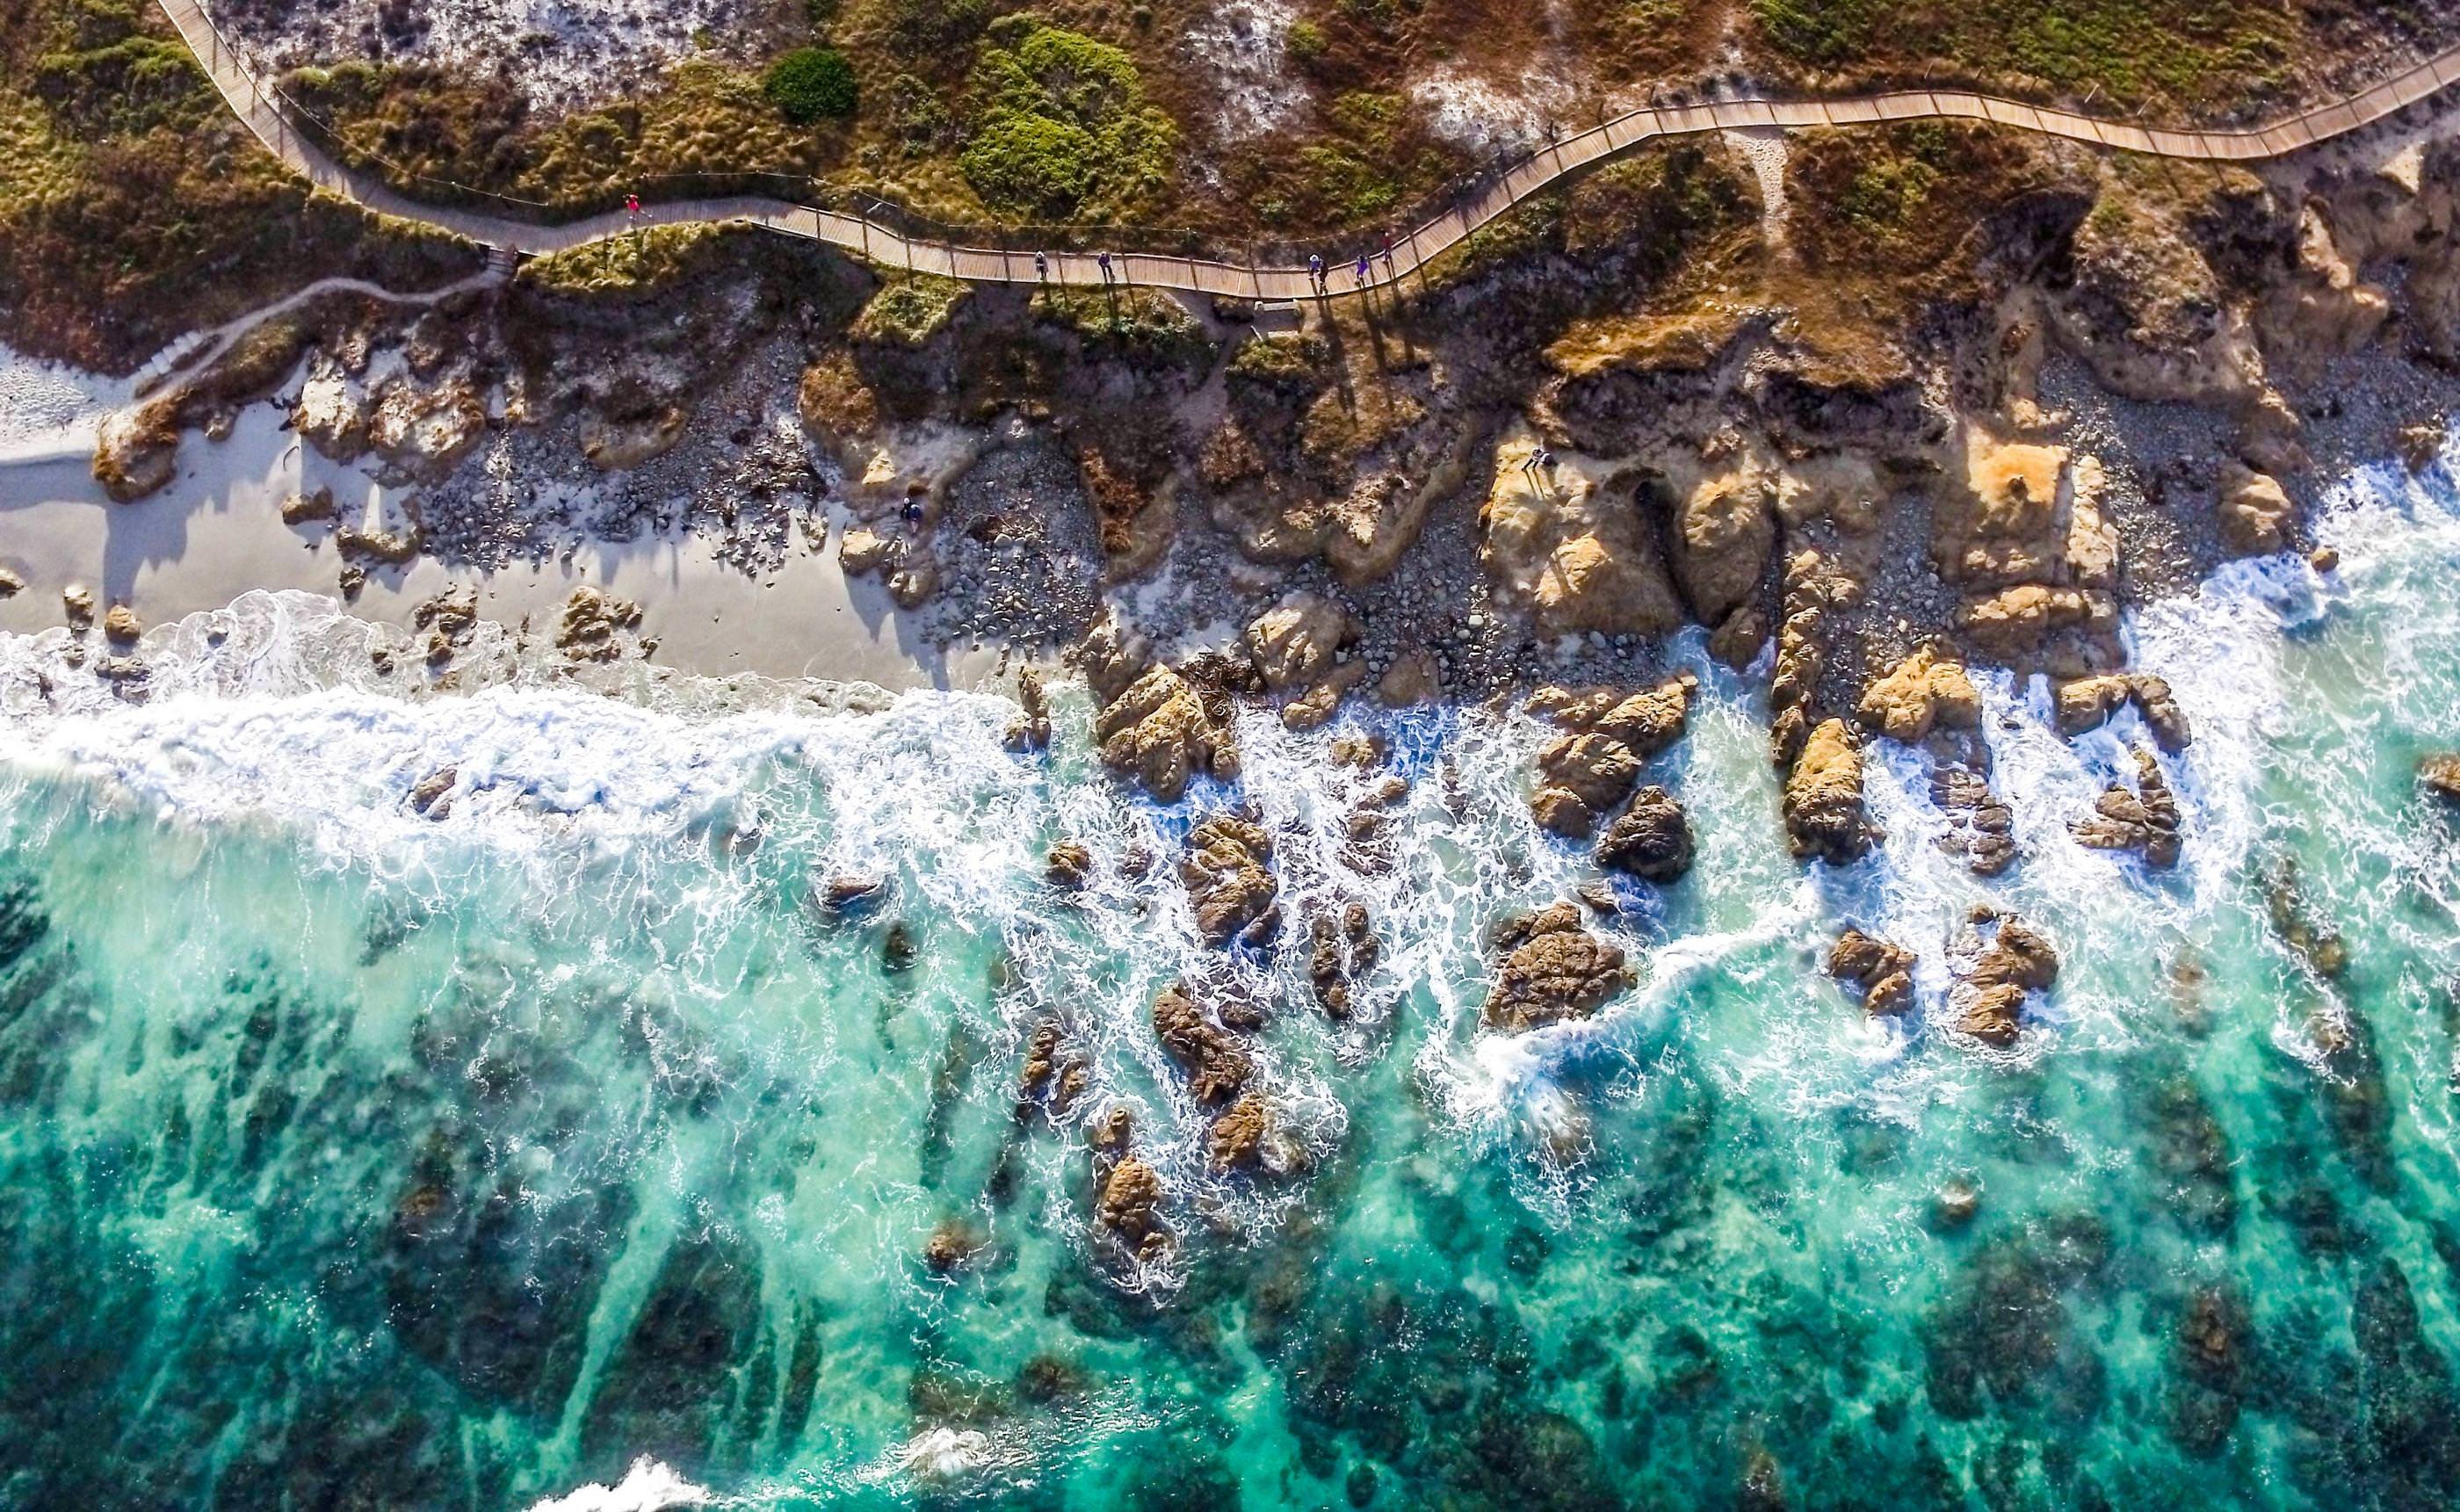 Aerial View Of Ocean Wallpapers